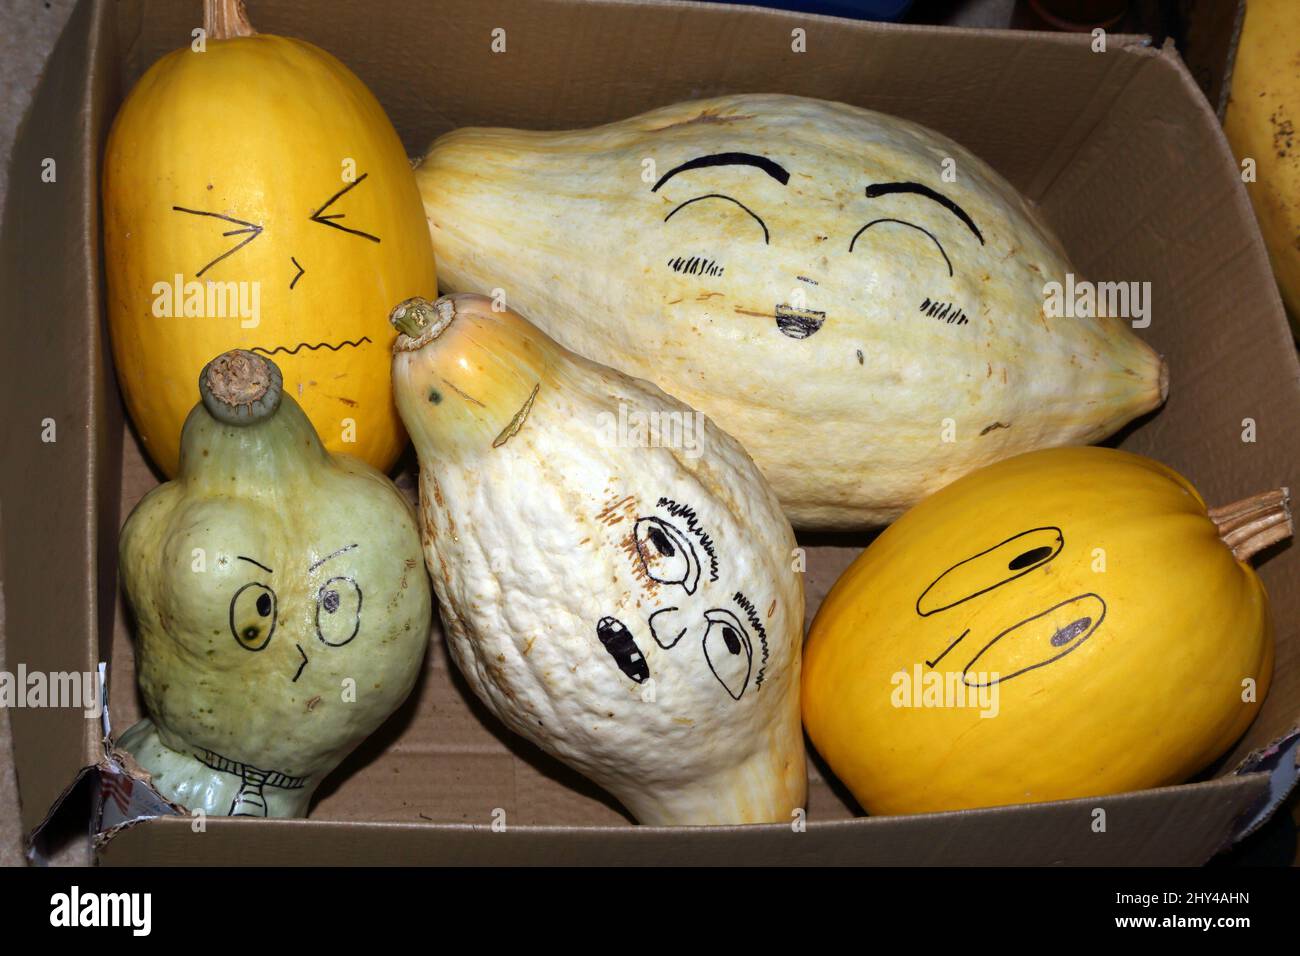 Gesichter auf verschiedenen Squash Gemüse gezeichnet Stockfoto